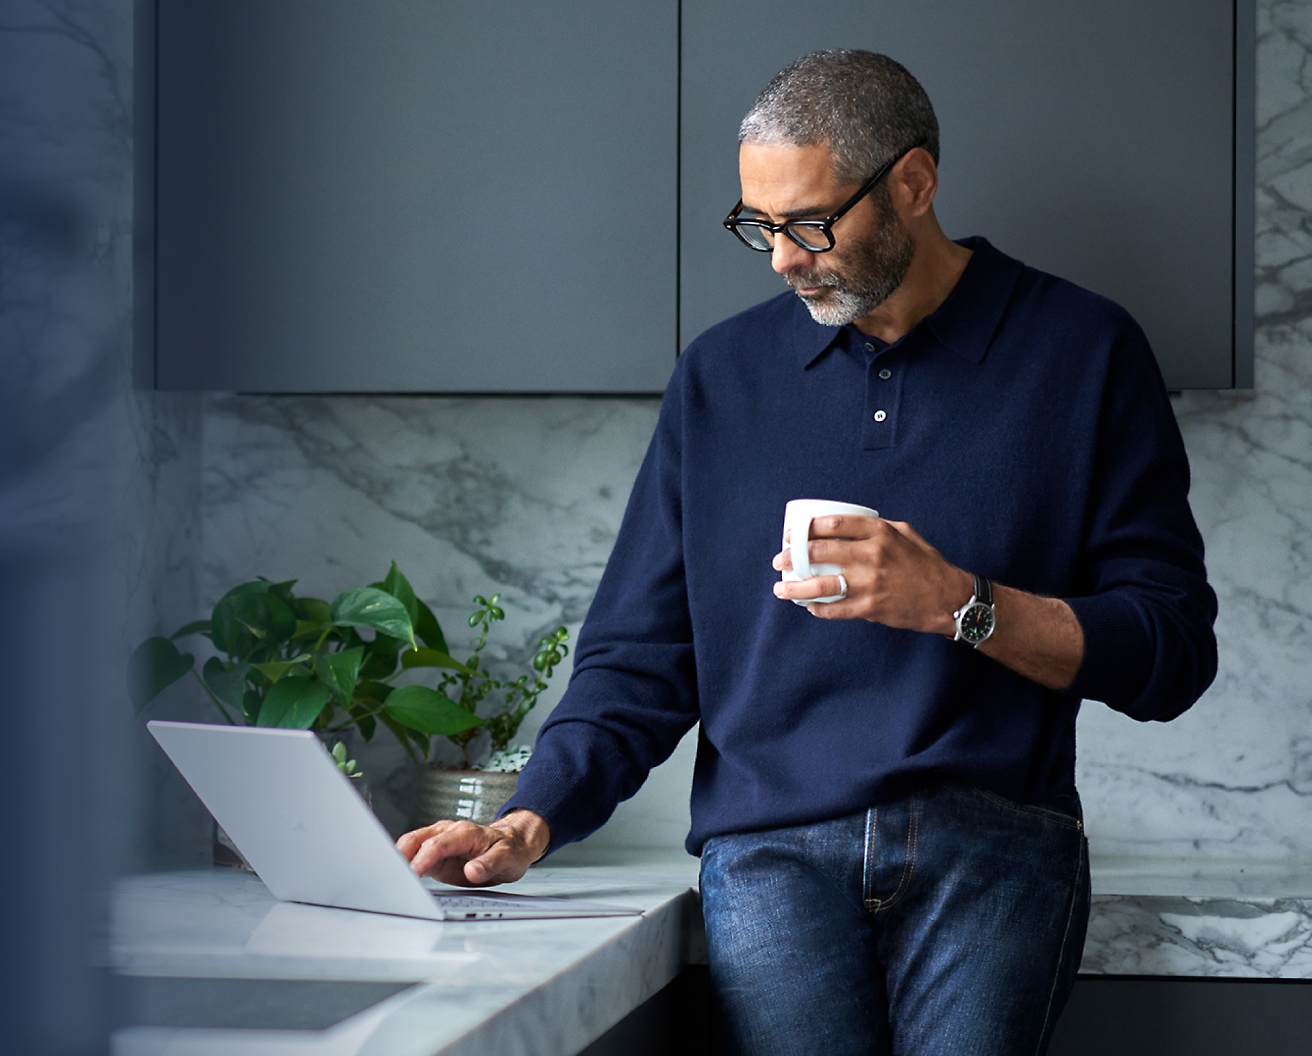 Uomo che indossa un paio di occhiali e un maglione blu, usa un computer portatile e tiene in mano una tazza di caffè in una cucina moderna.